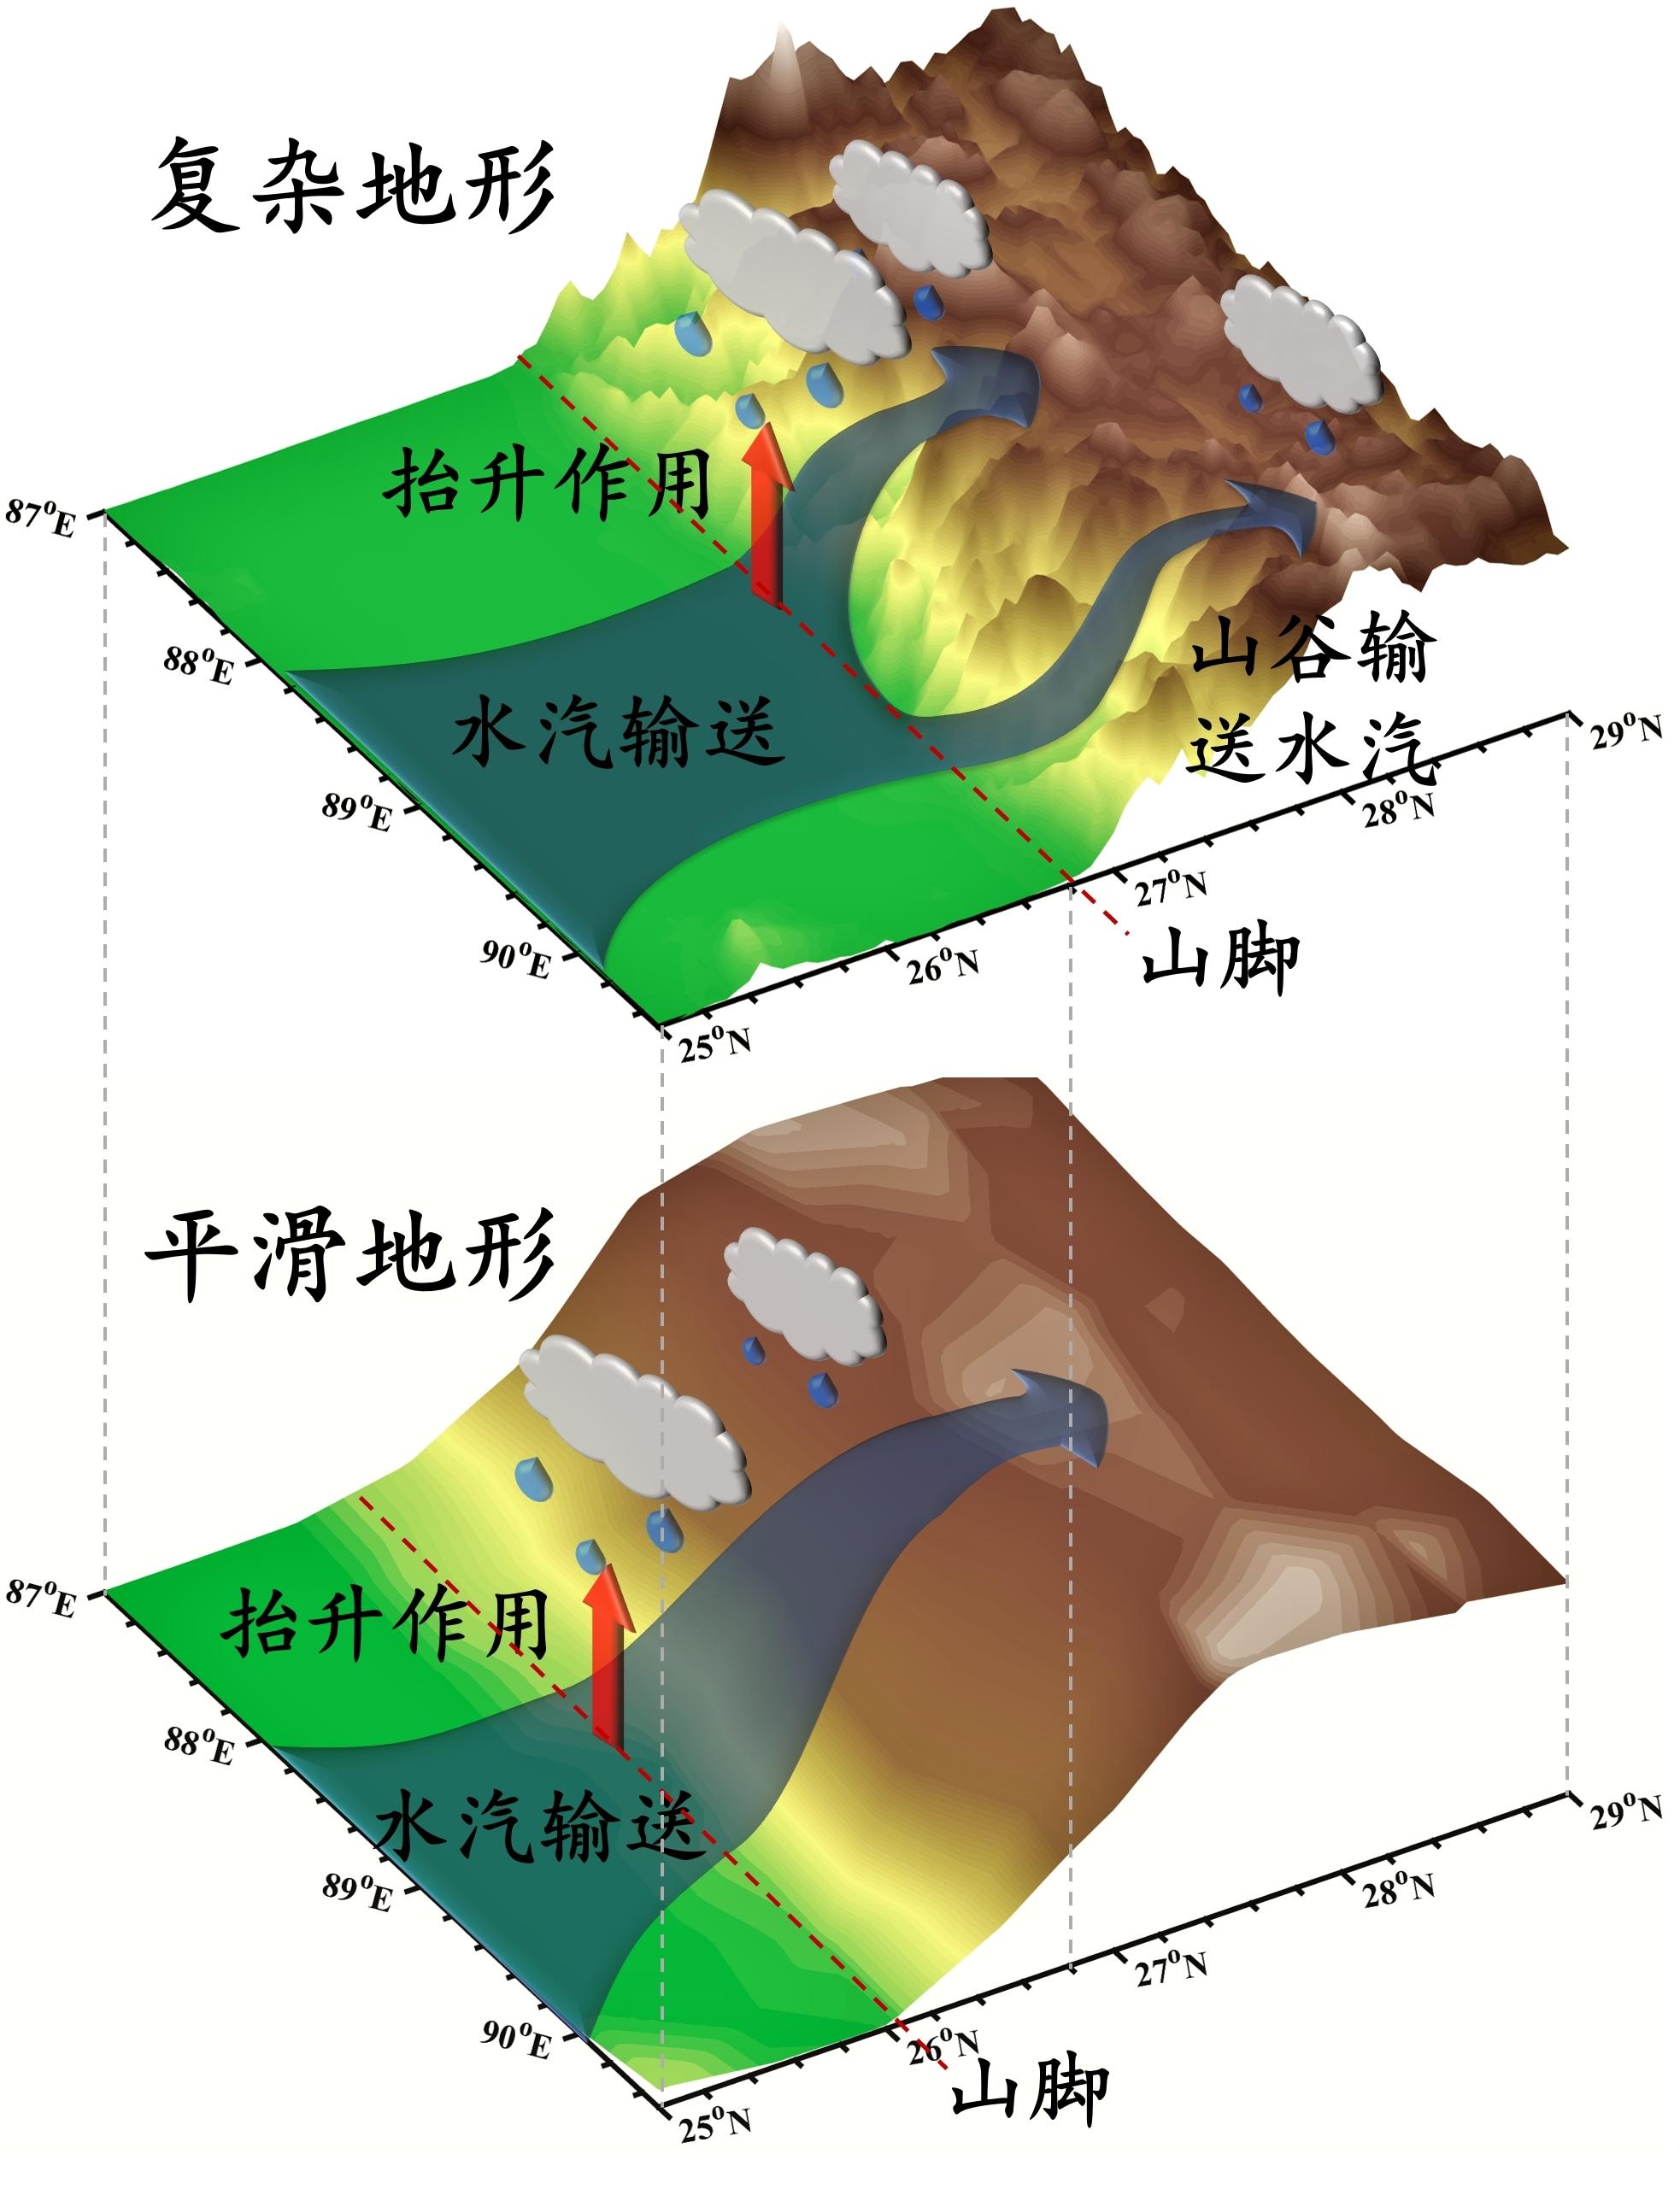 中国科大利用全球变分辨率模式在公里尺度揭示青藏高原夏季水循环特征